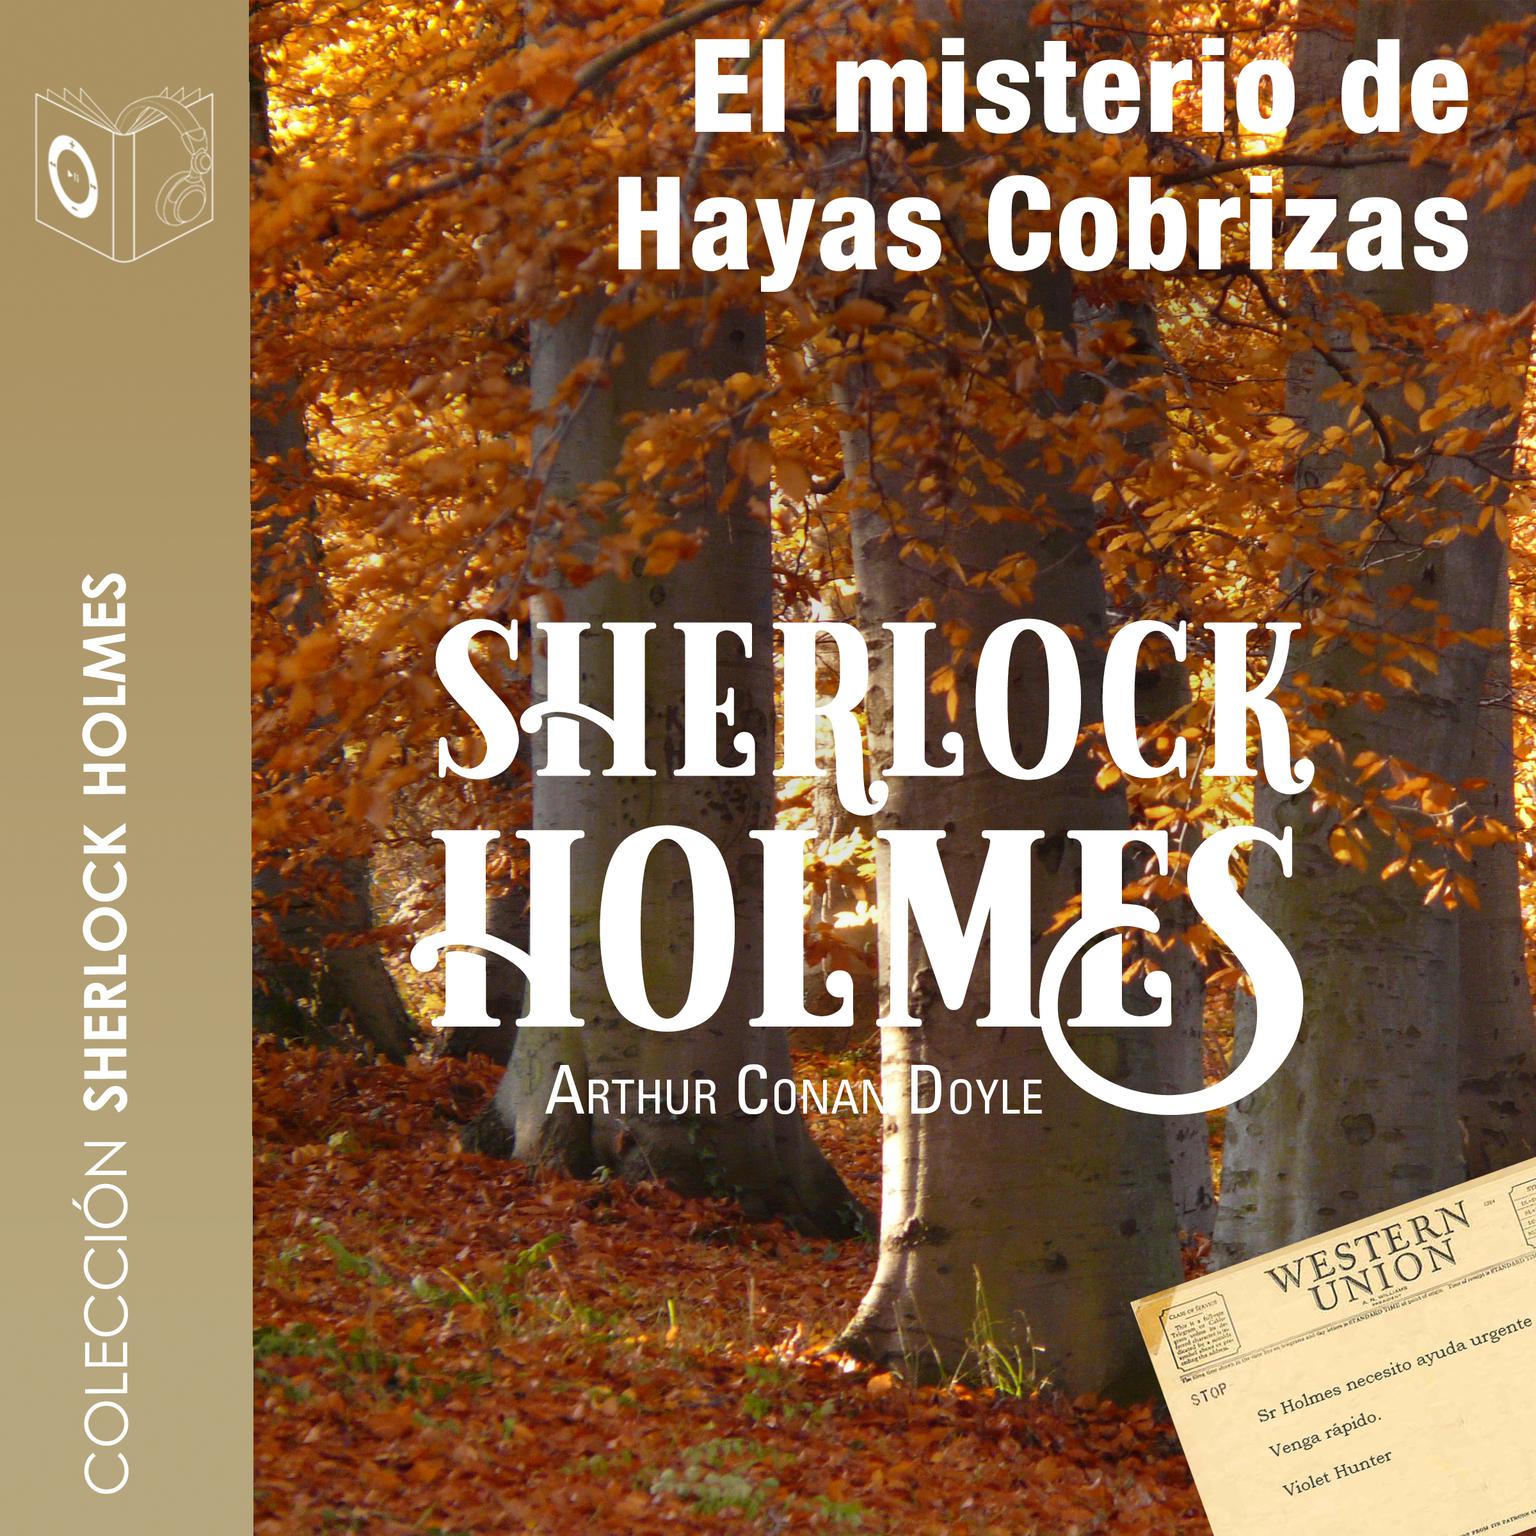 El misterio de Hayas Cobrizas (Abridged) Audiobook, by Arthur Conan Doyle